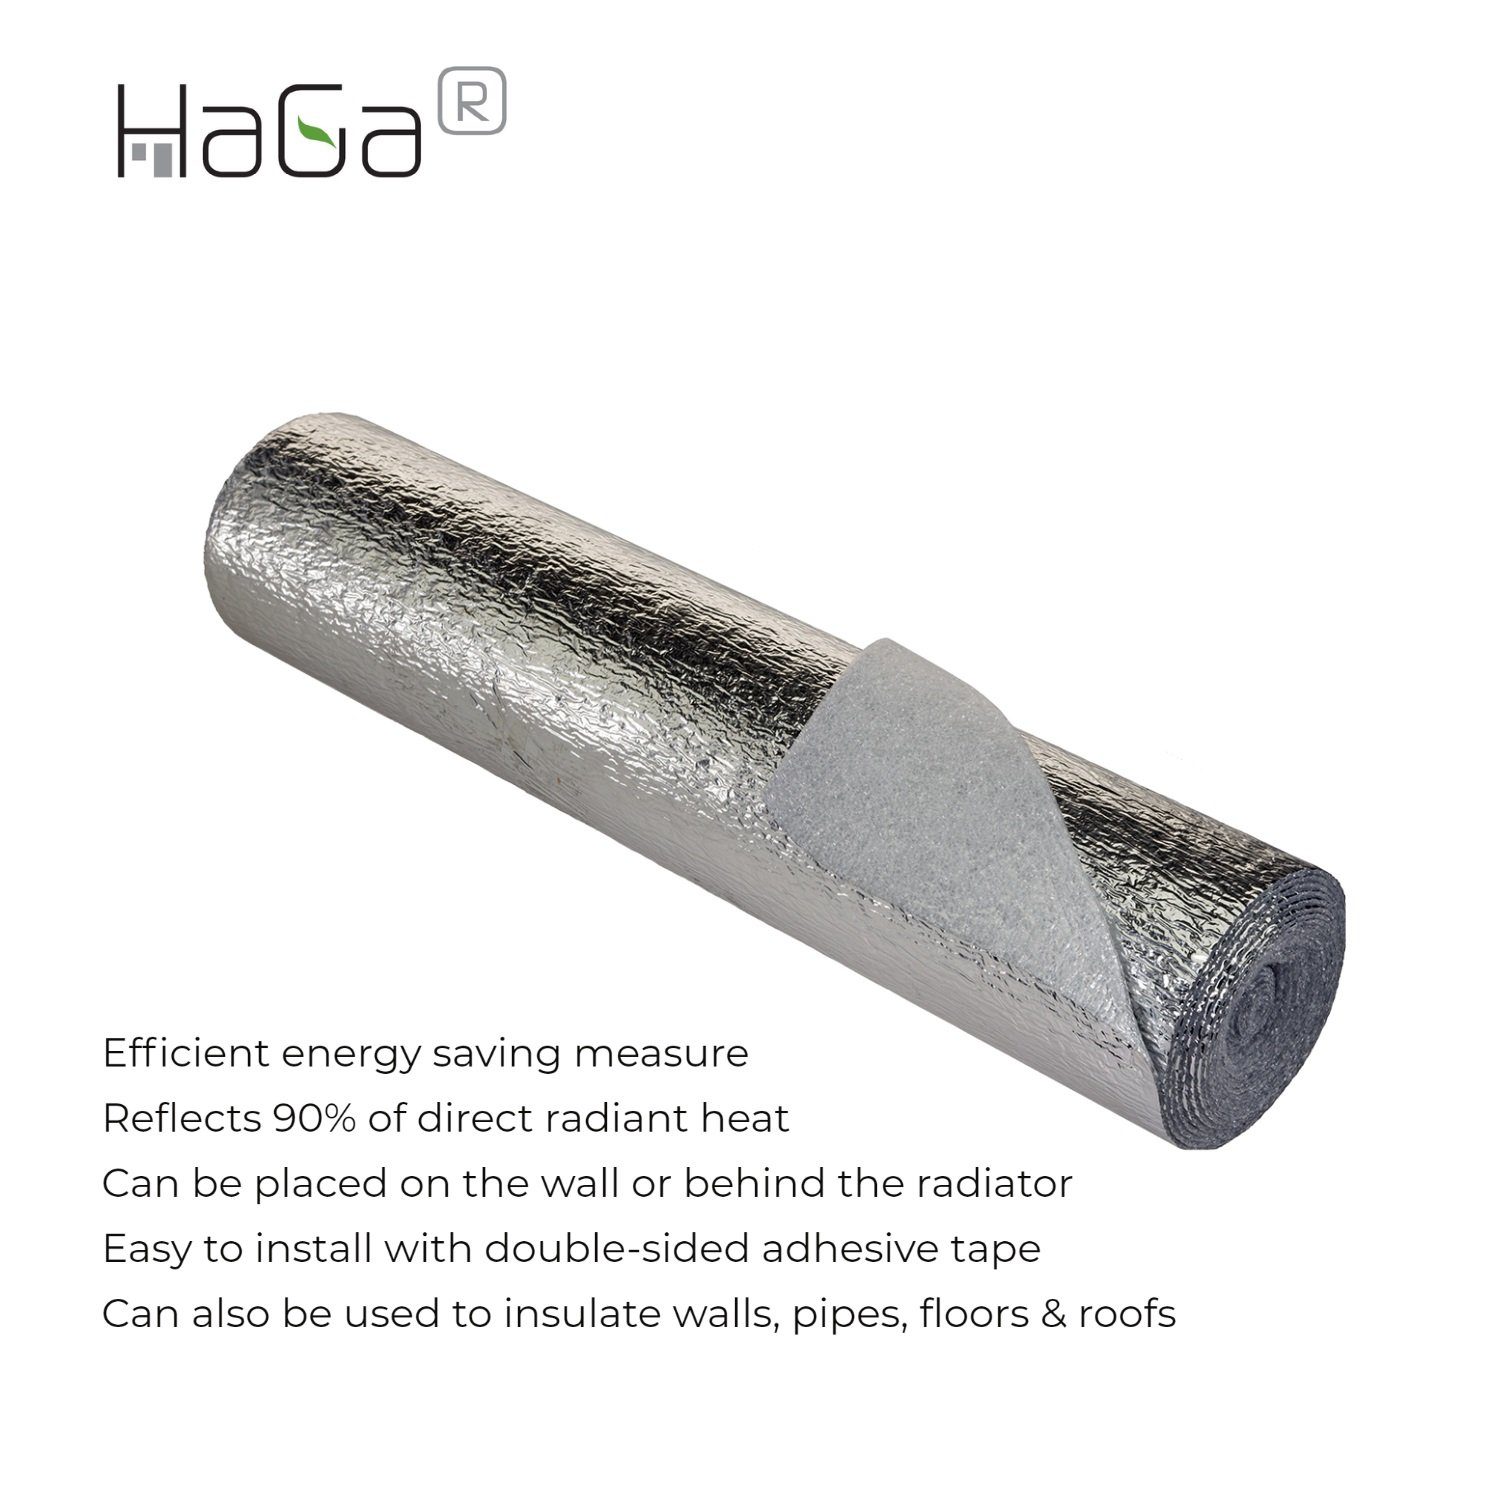 HaGa Heizkörperreflexionsfolie HaGa® Heizkörper Reflexionsfolie 0,6m x 2,5m  Isoliermatte